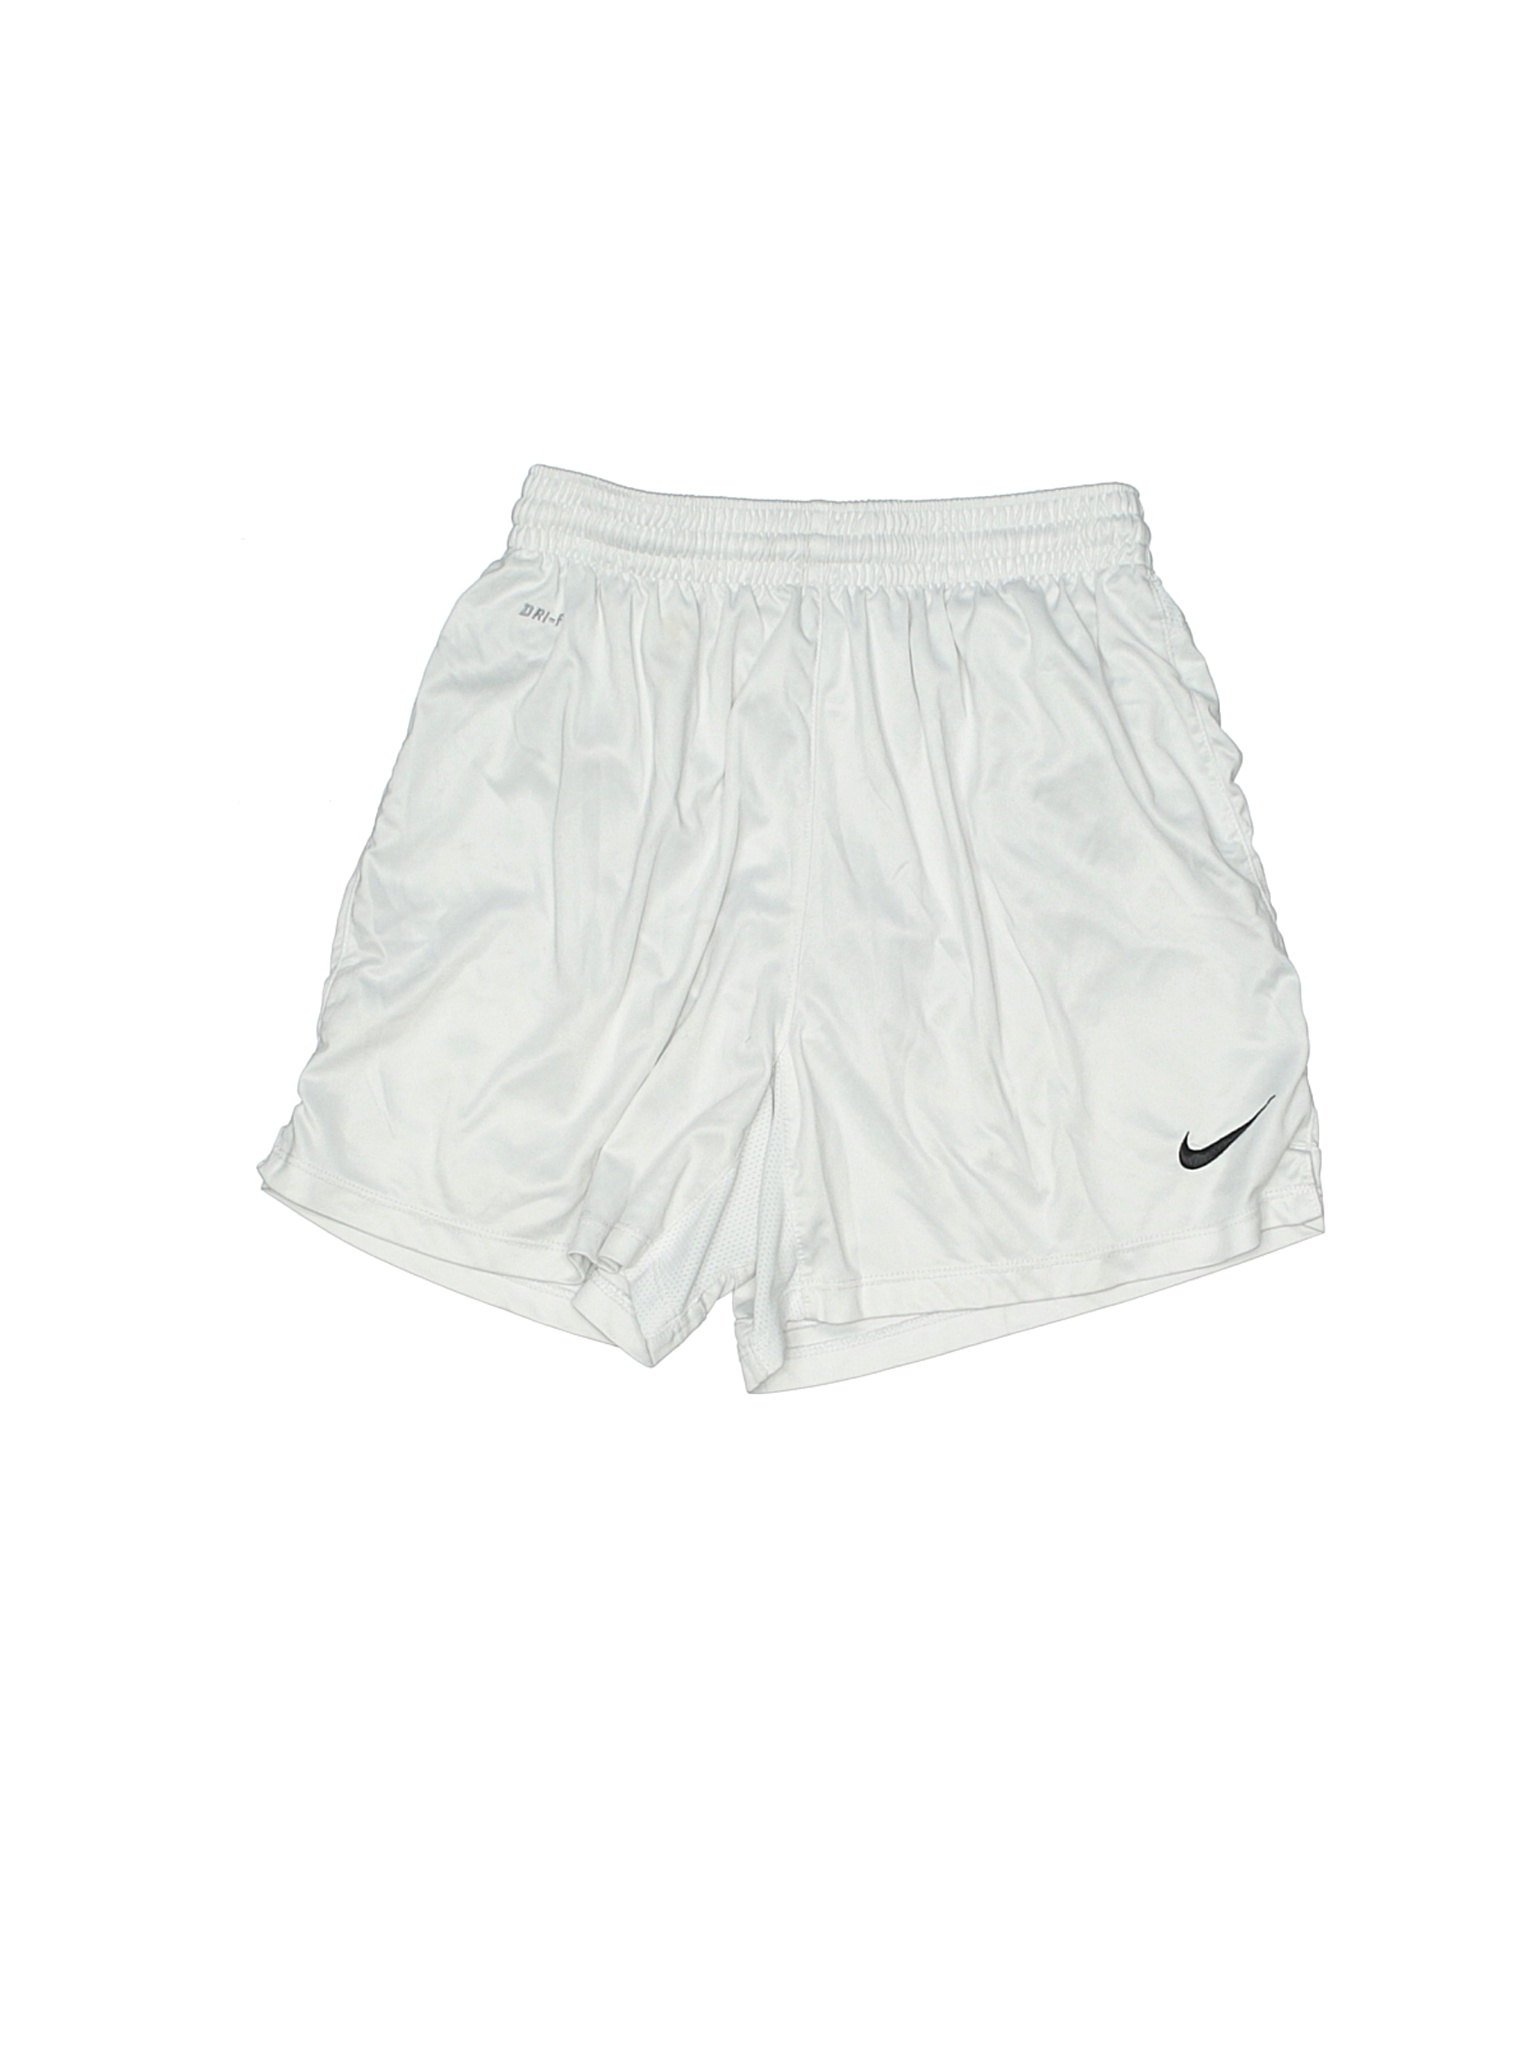 Nike Girls White Athletic Shorts Medium kids | eBay